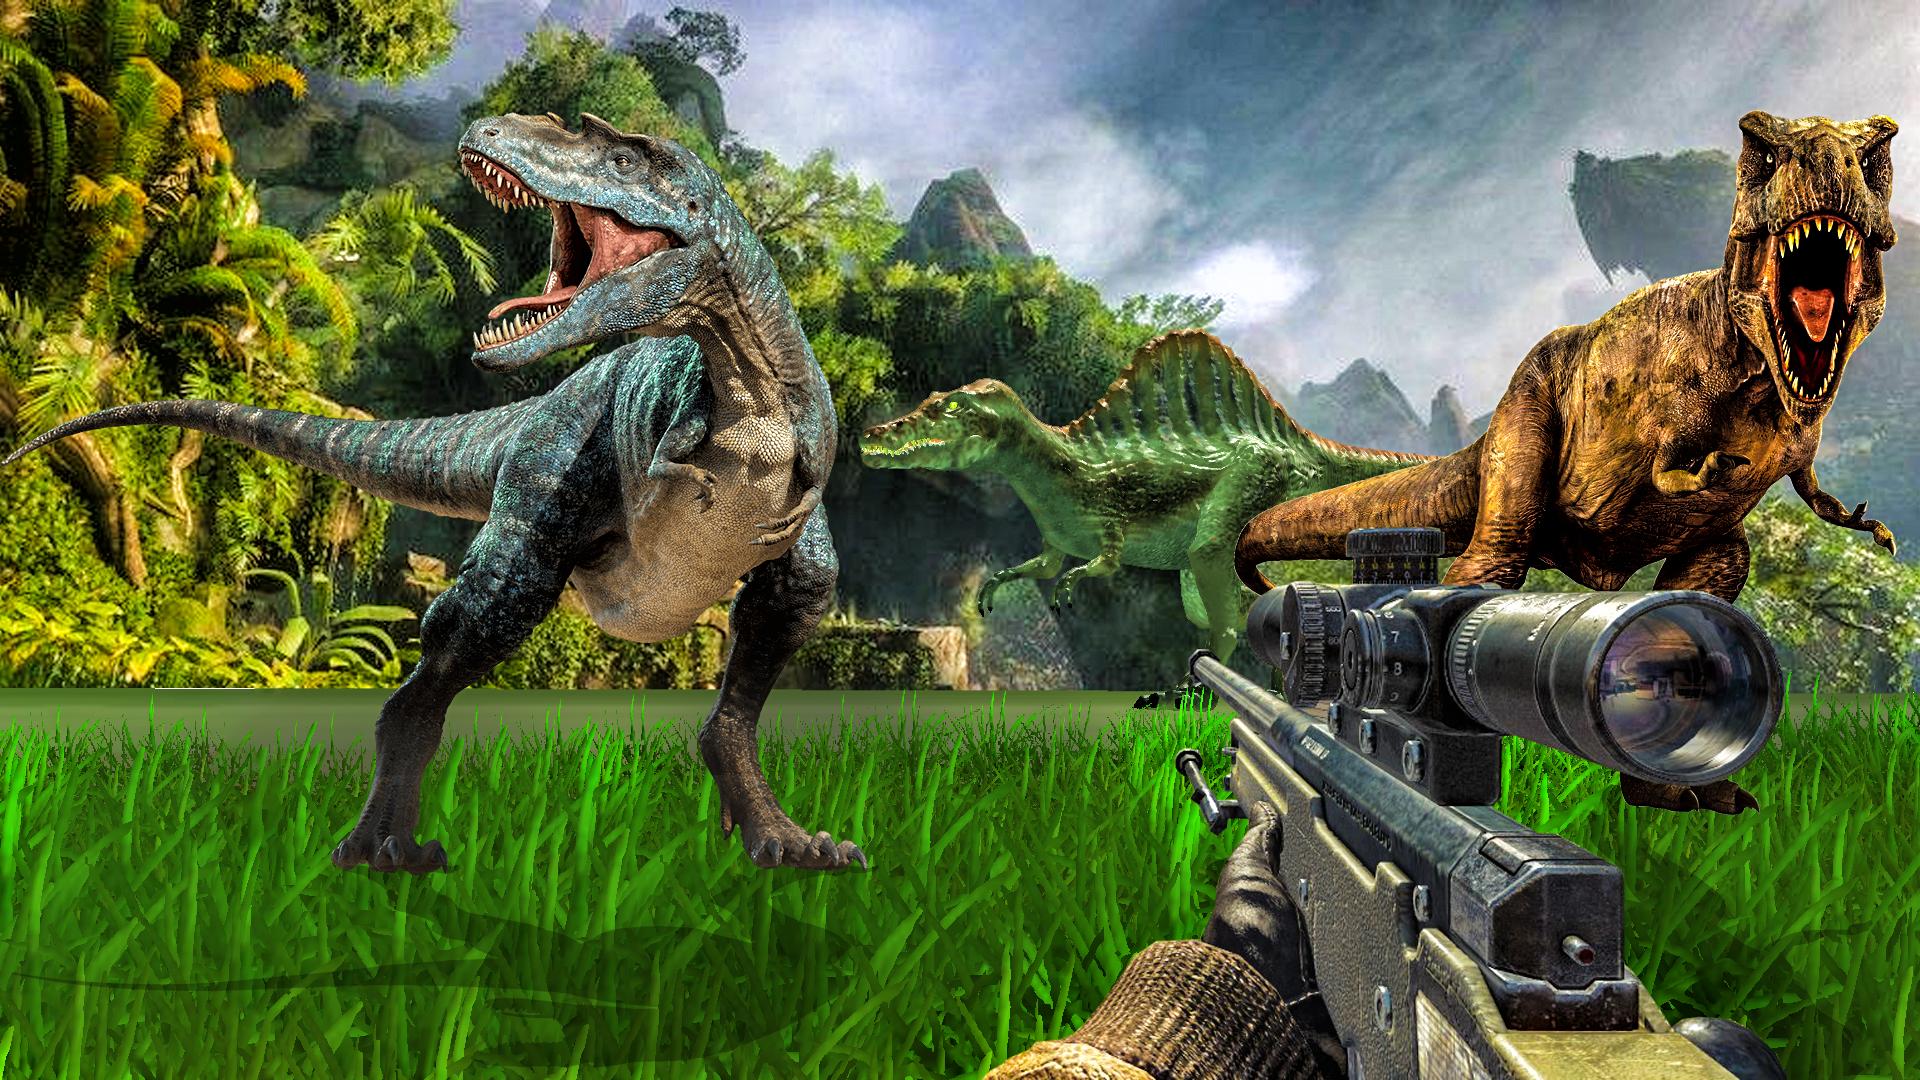 Carnivores Dino hunter game-Dinosaur game shooting 9.1 Screenshot 8